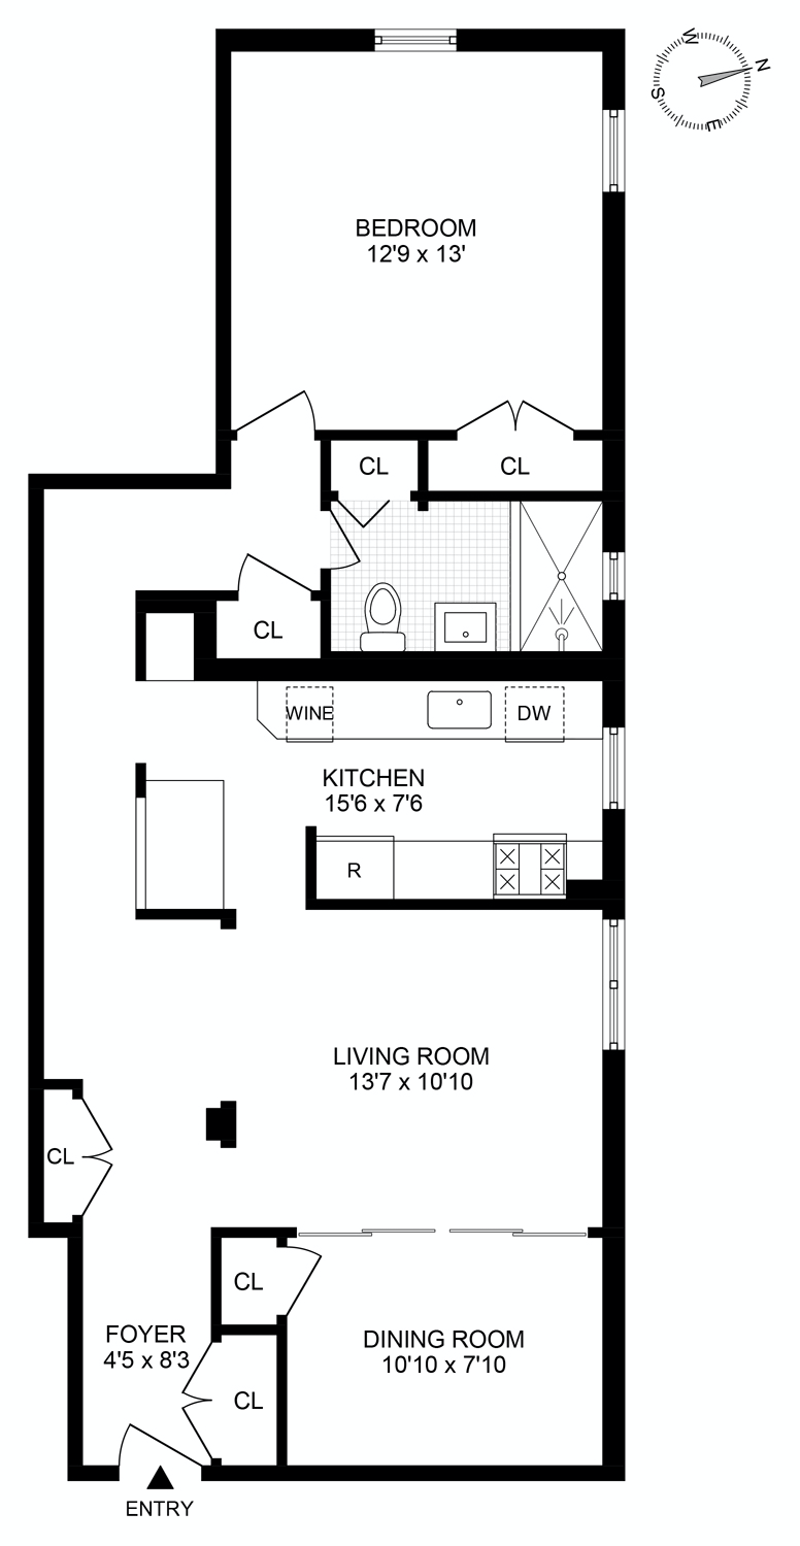 Floorplan for 1000 Hudson St, 402